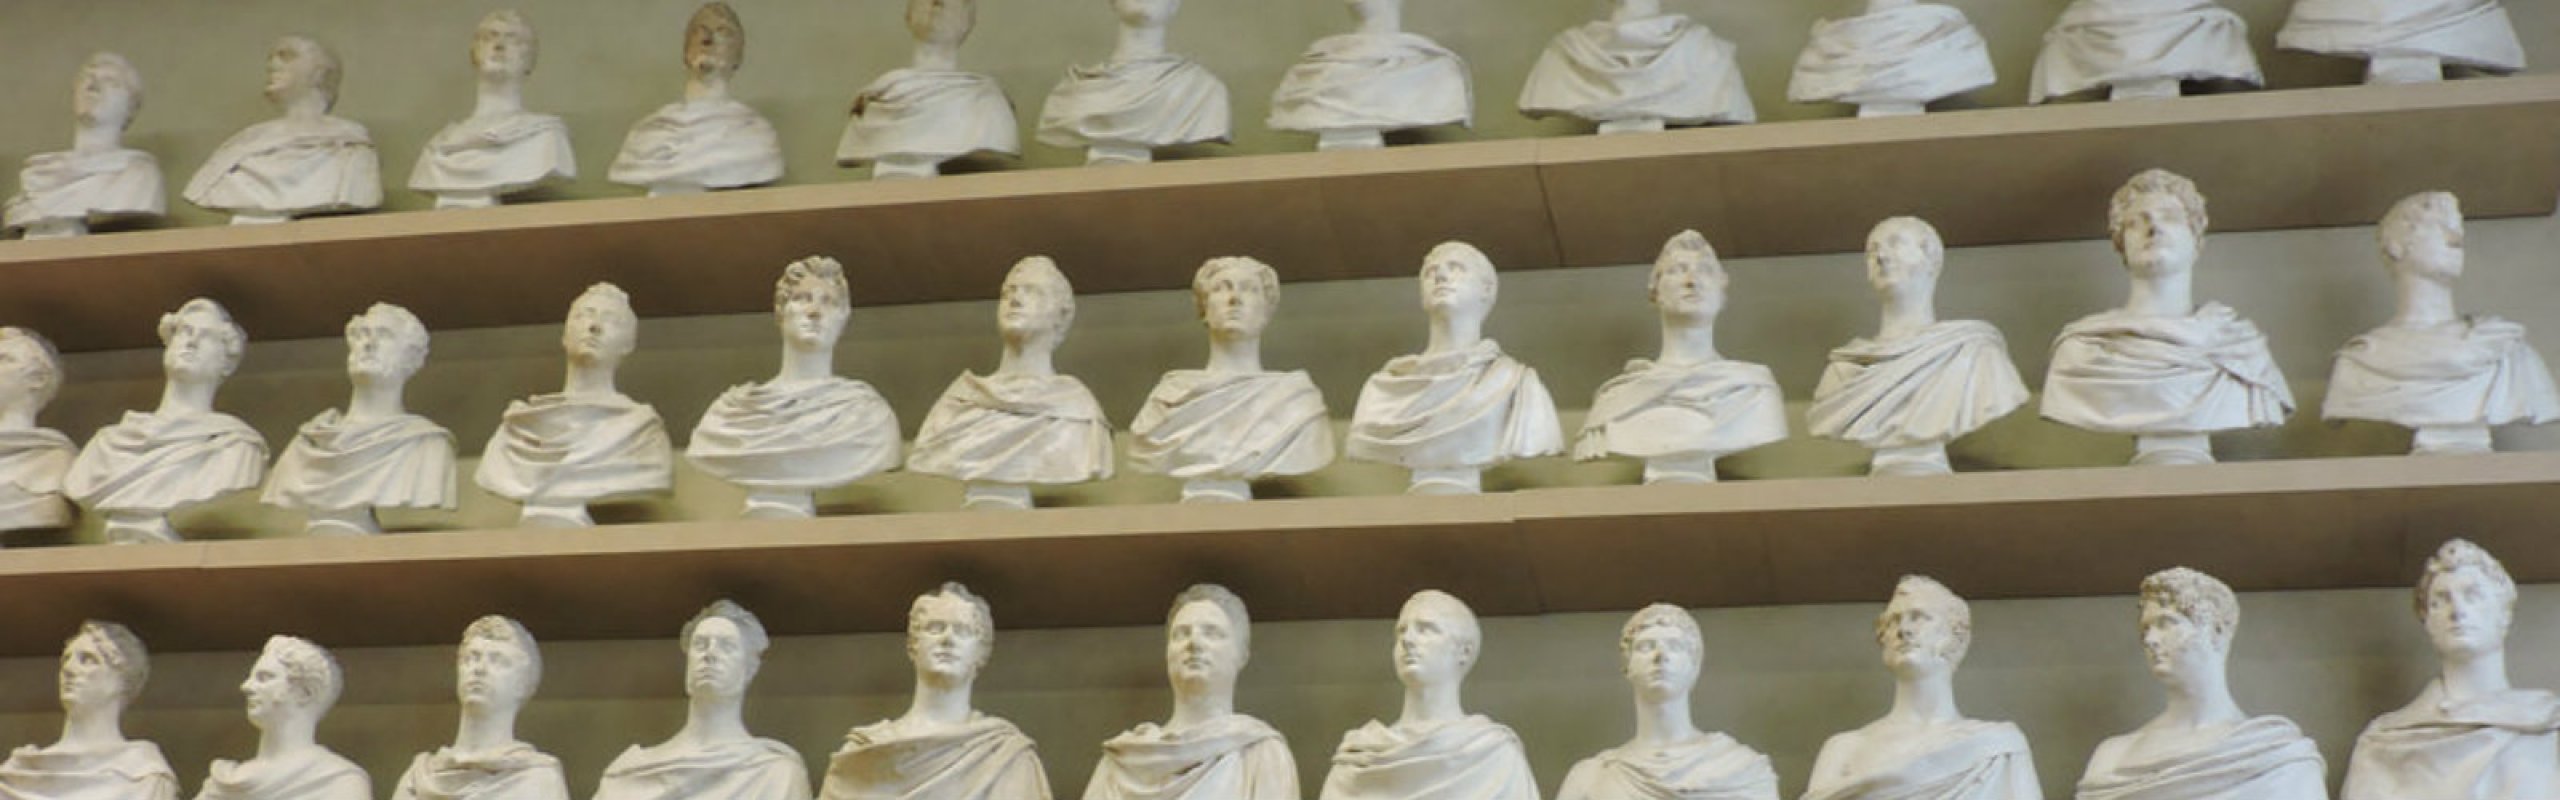 Inglesi ingessati - gessi nella collezione Bartolini della Galleria dell’Accademia di Firenze